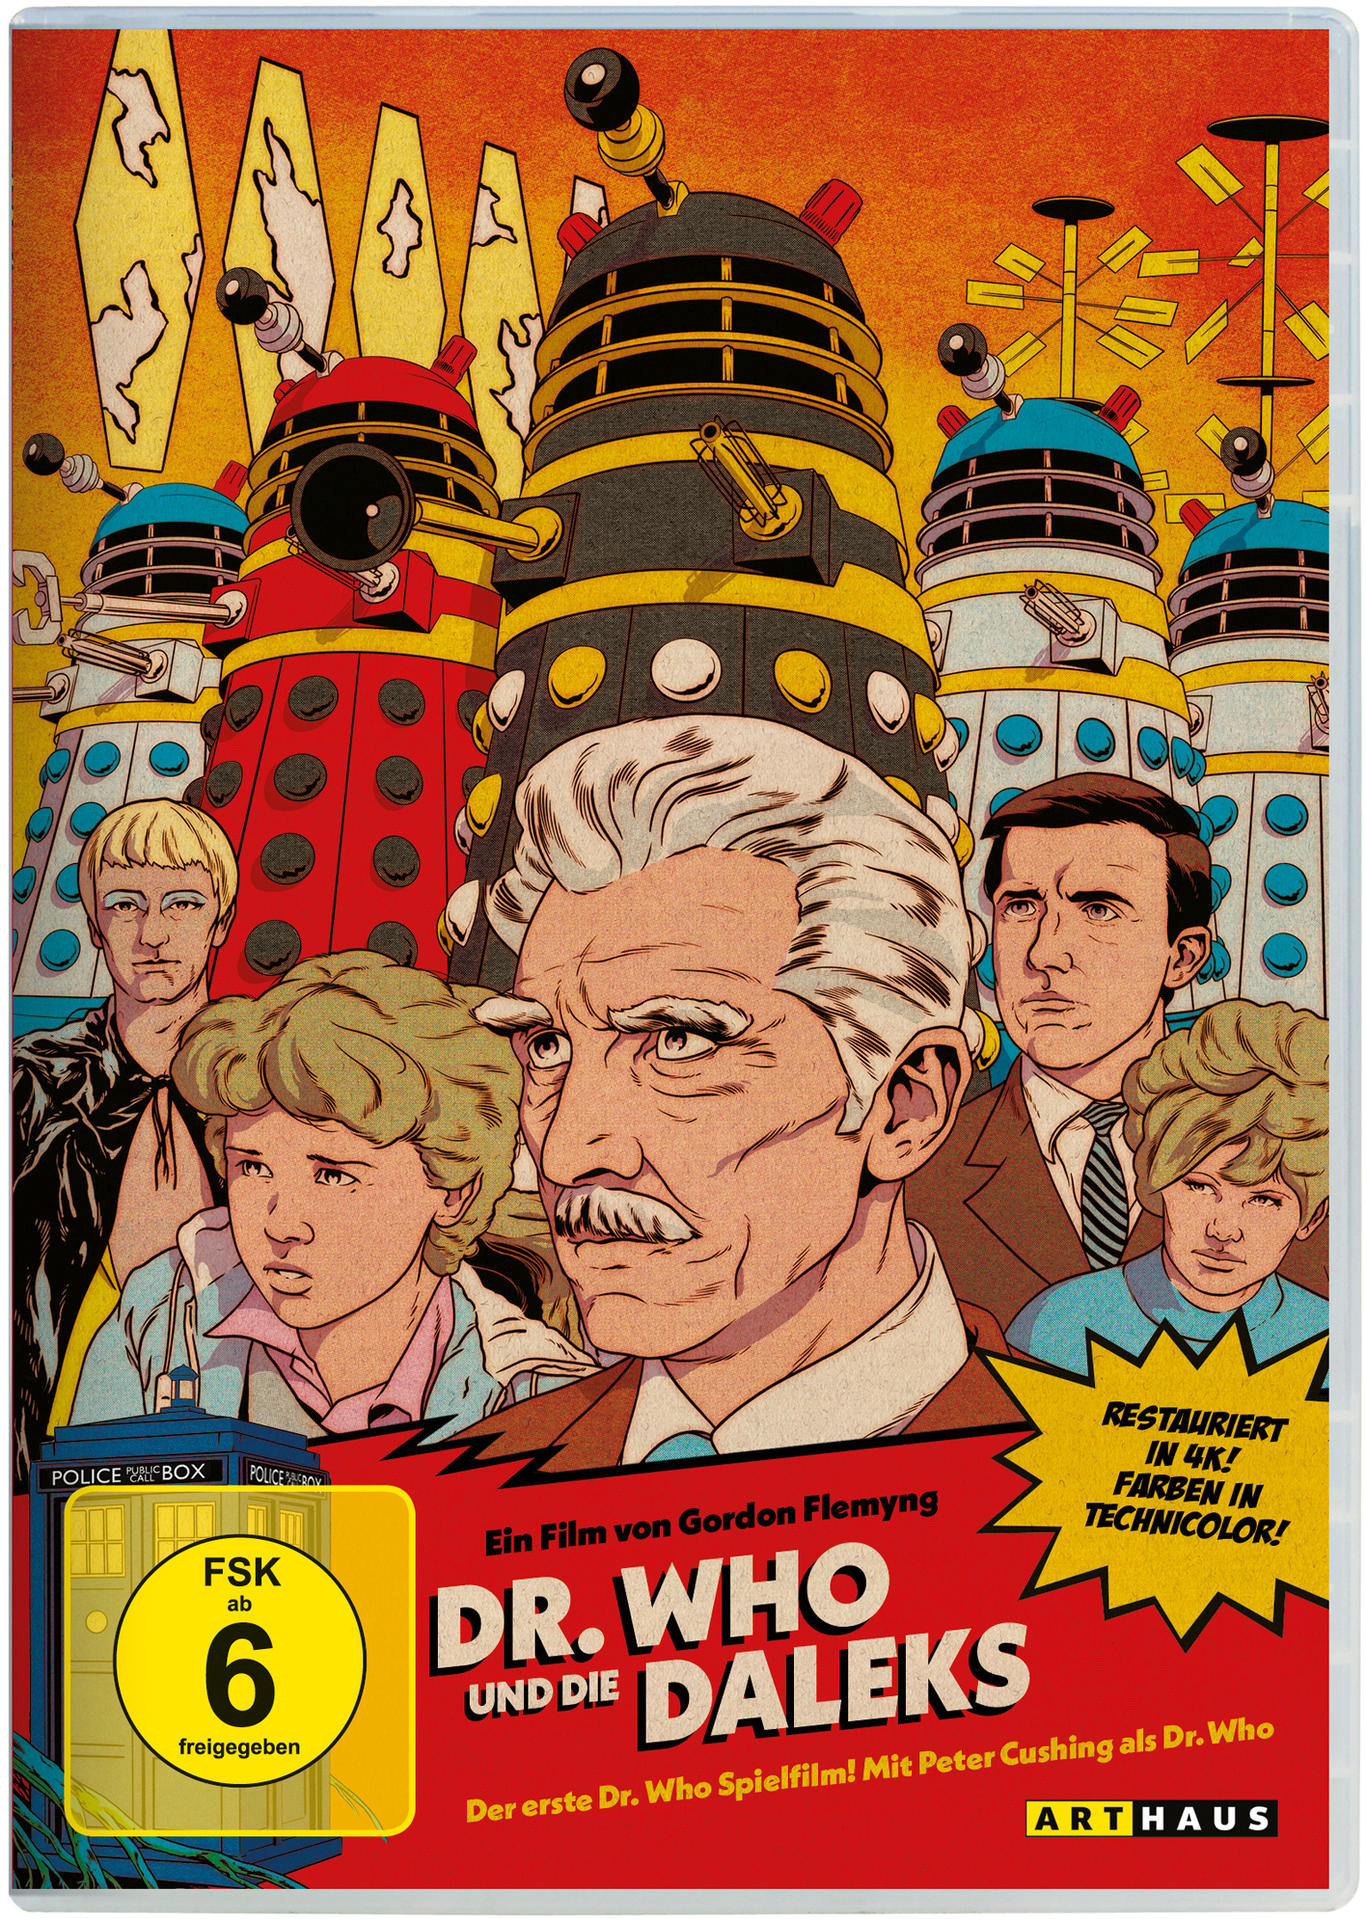 Daleks Dr. Who und DVD die